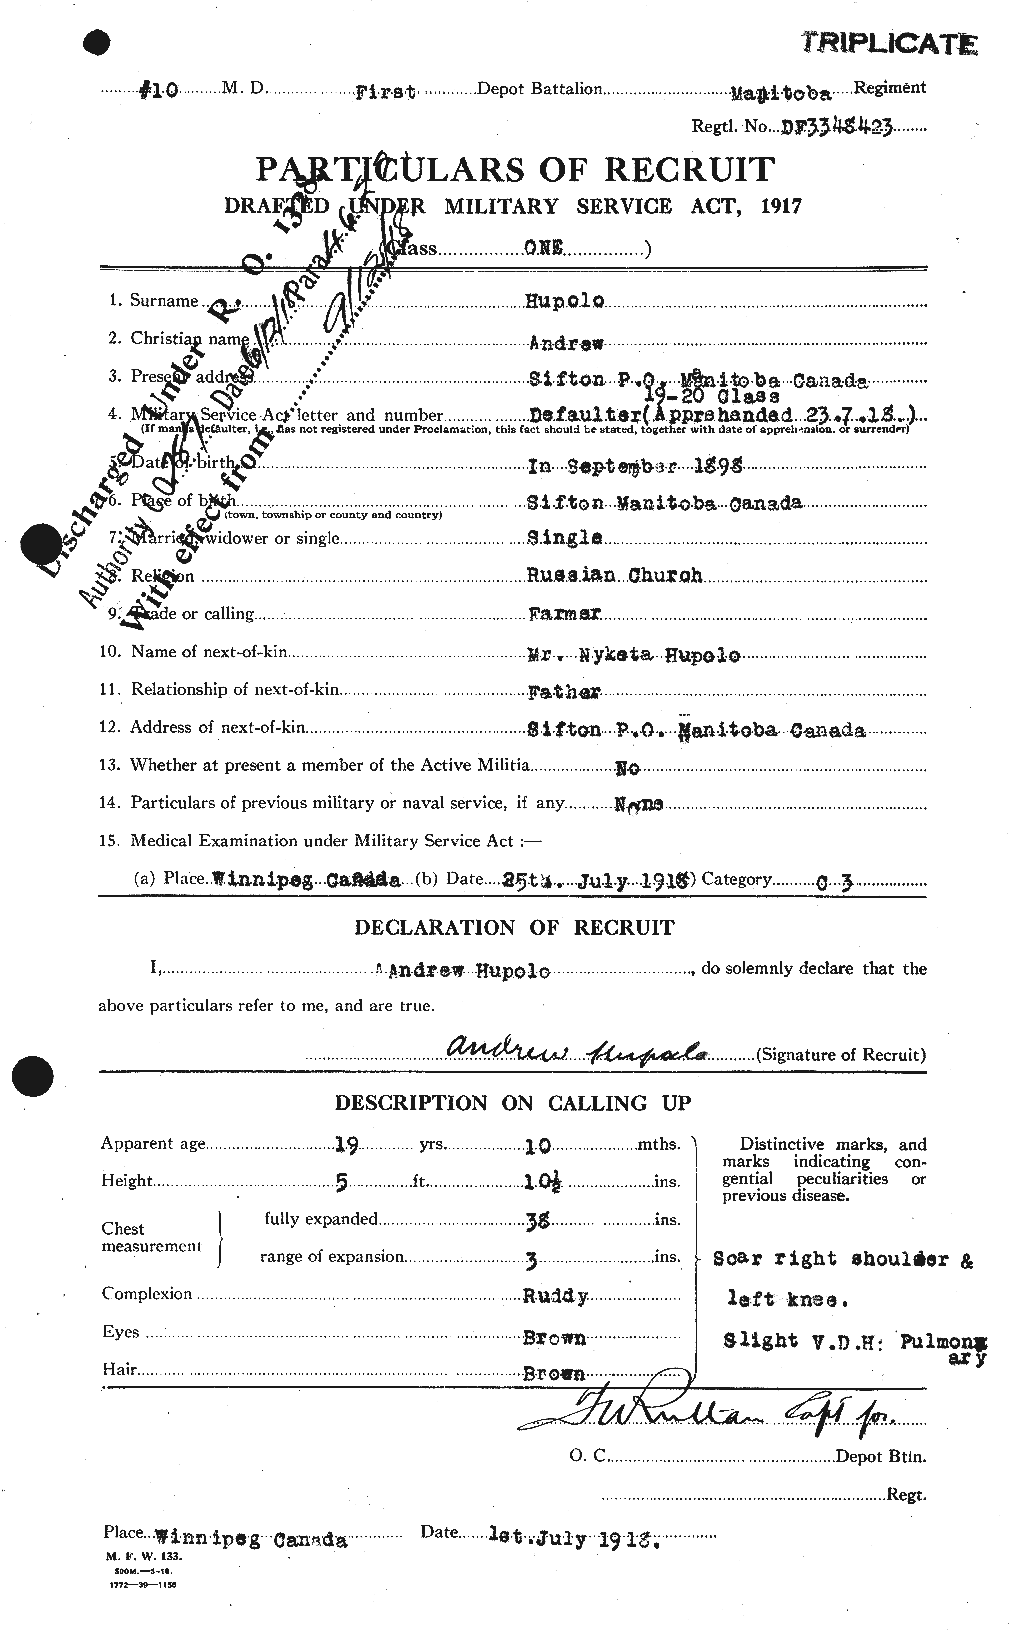 Dossiers du Personnel de la Première Guerre mondiale - CEC 408396a